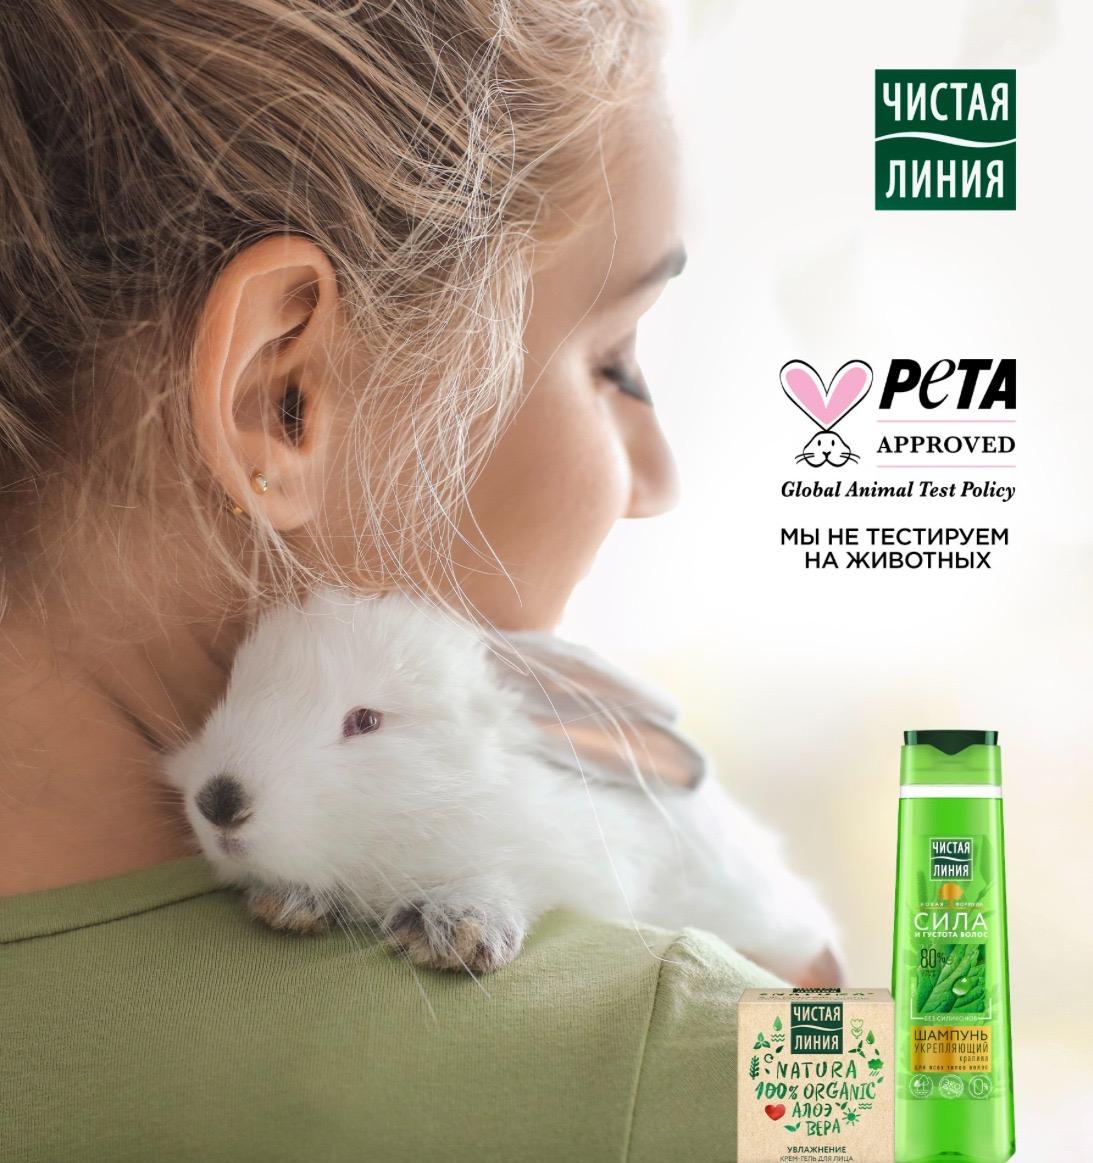 Бренд «Чистая Линия» получил одобрение от организации PETA